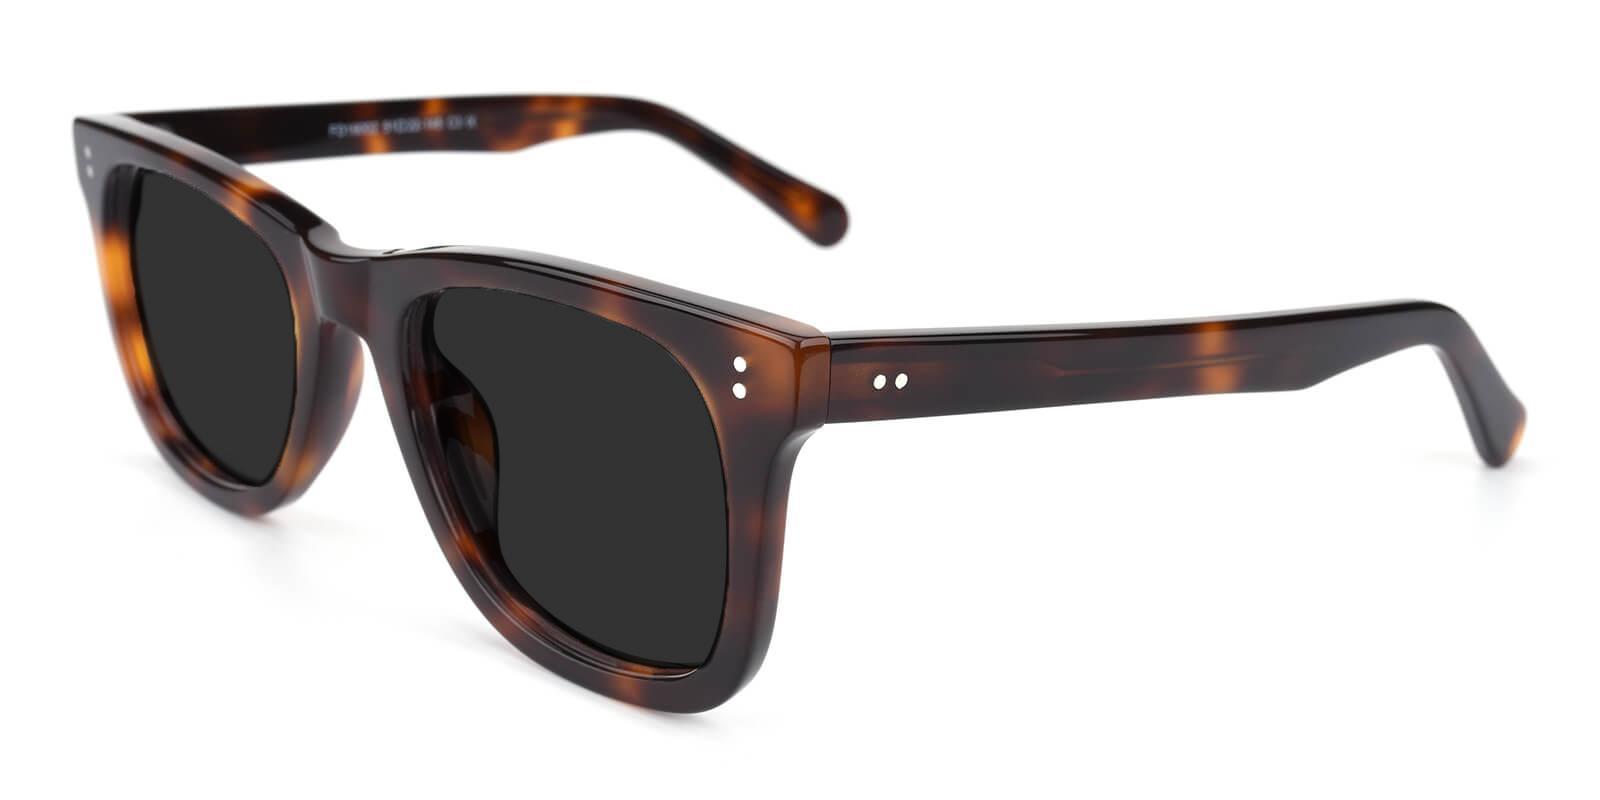 Notting Tortoise Acetate Sunglasses , UniversalBridgeFit Frames from ABBE Glasses